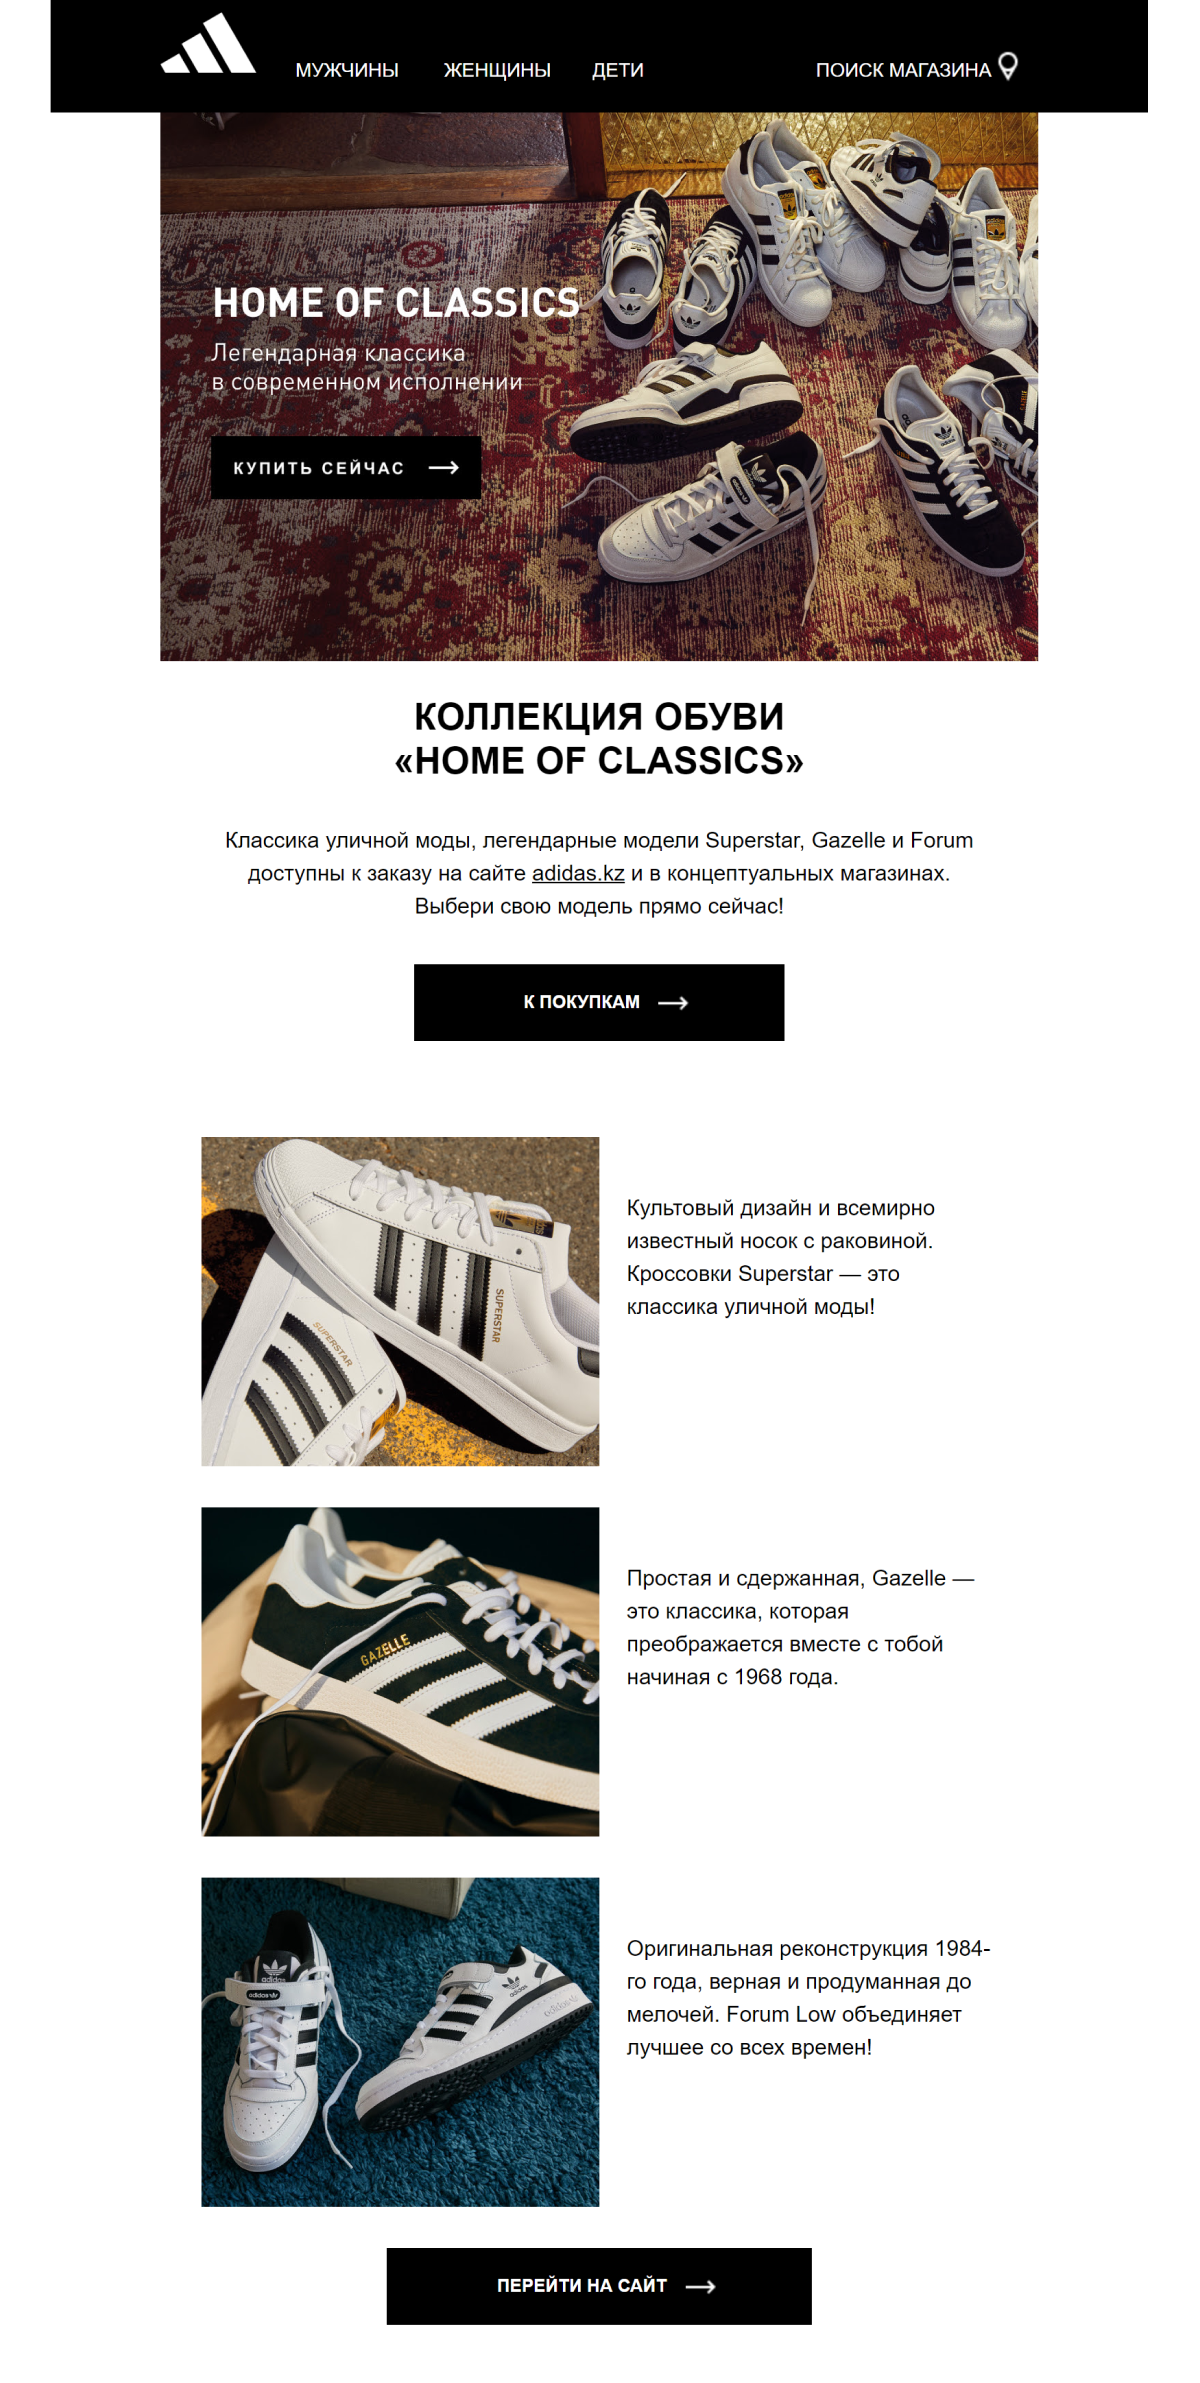 Рассылка Adidas соответствует требованиям к тексту